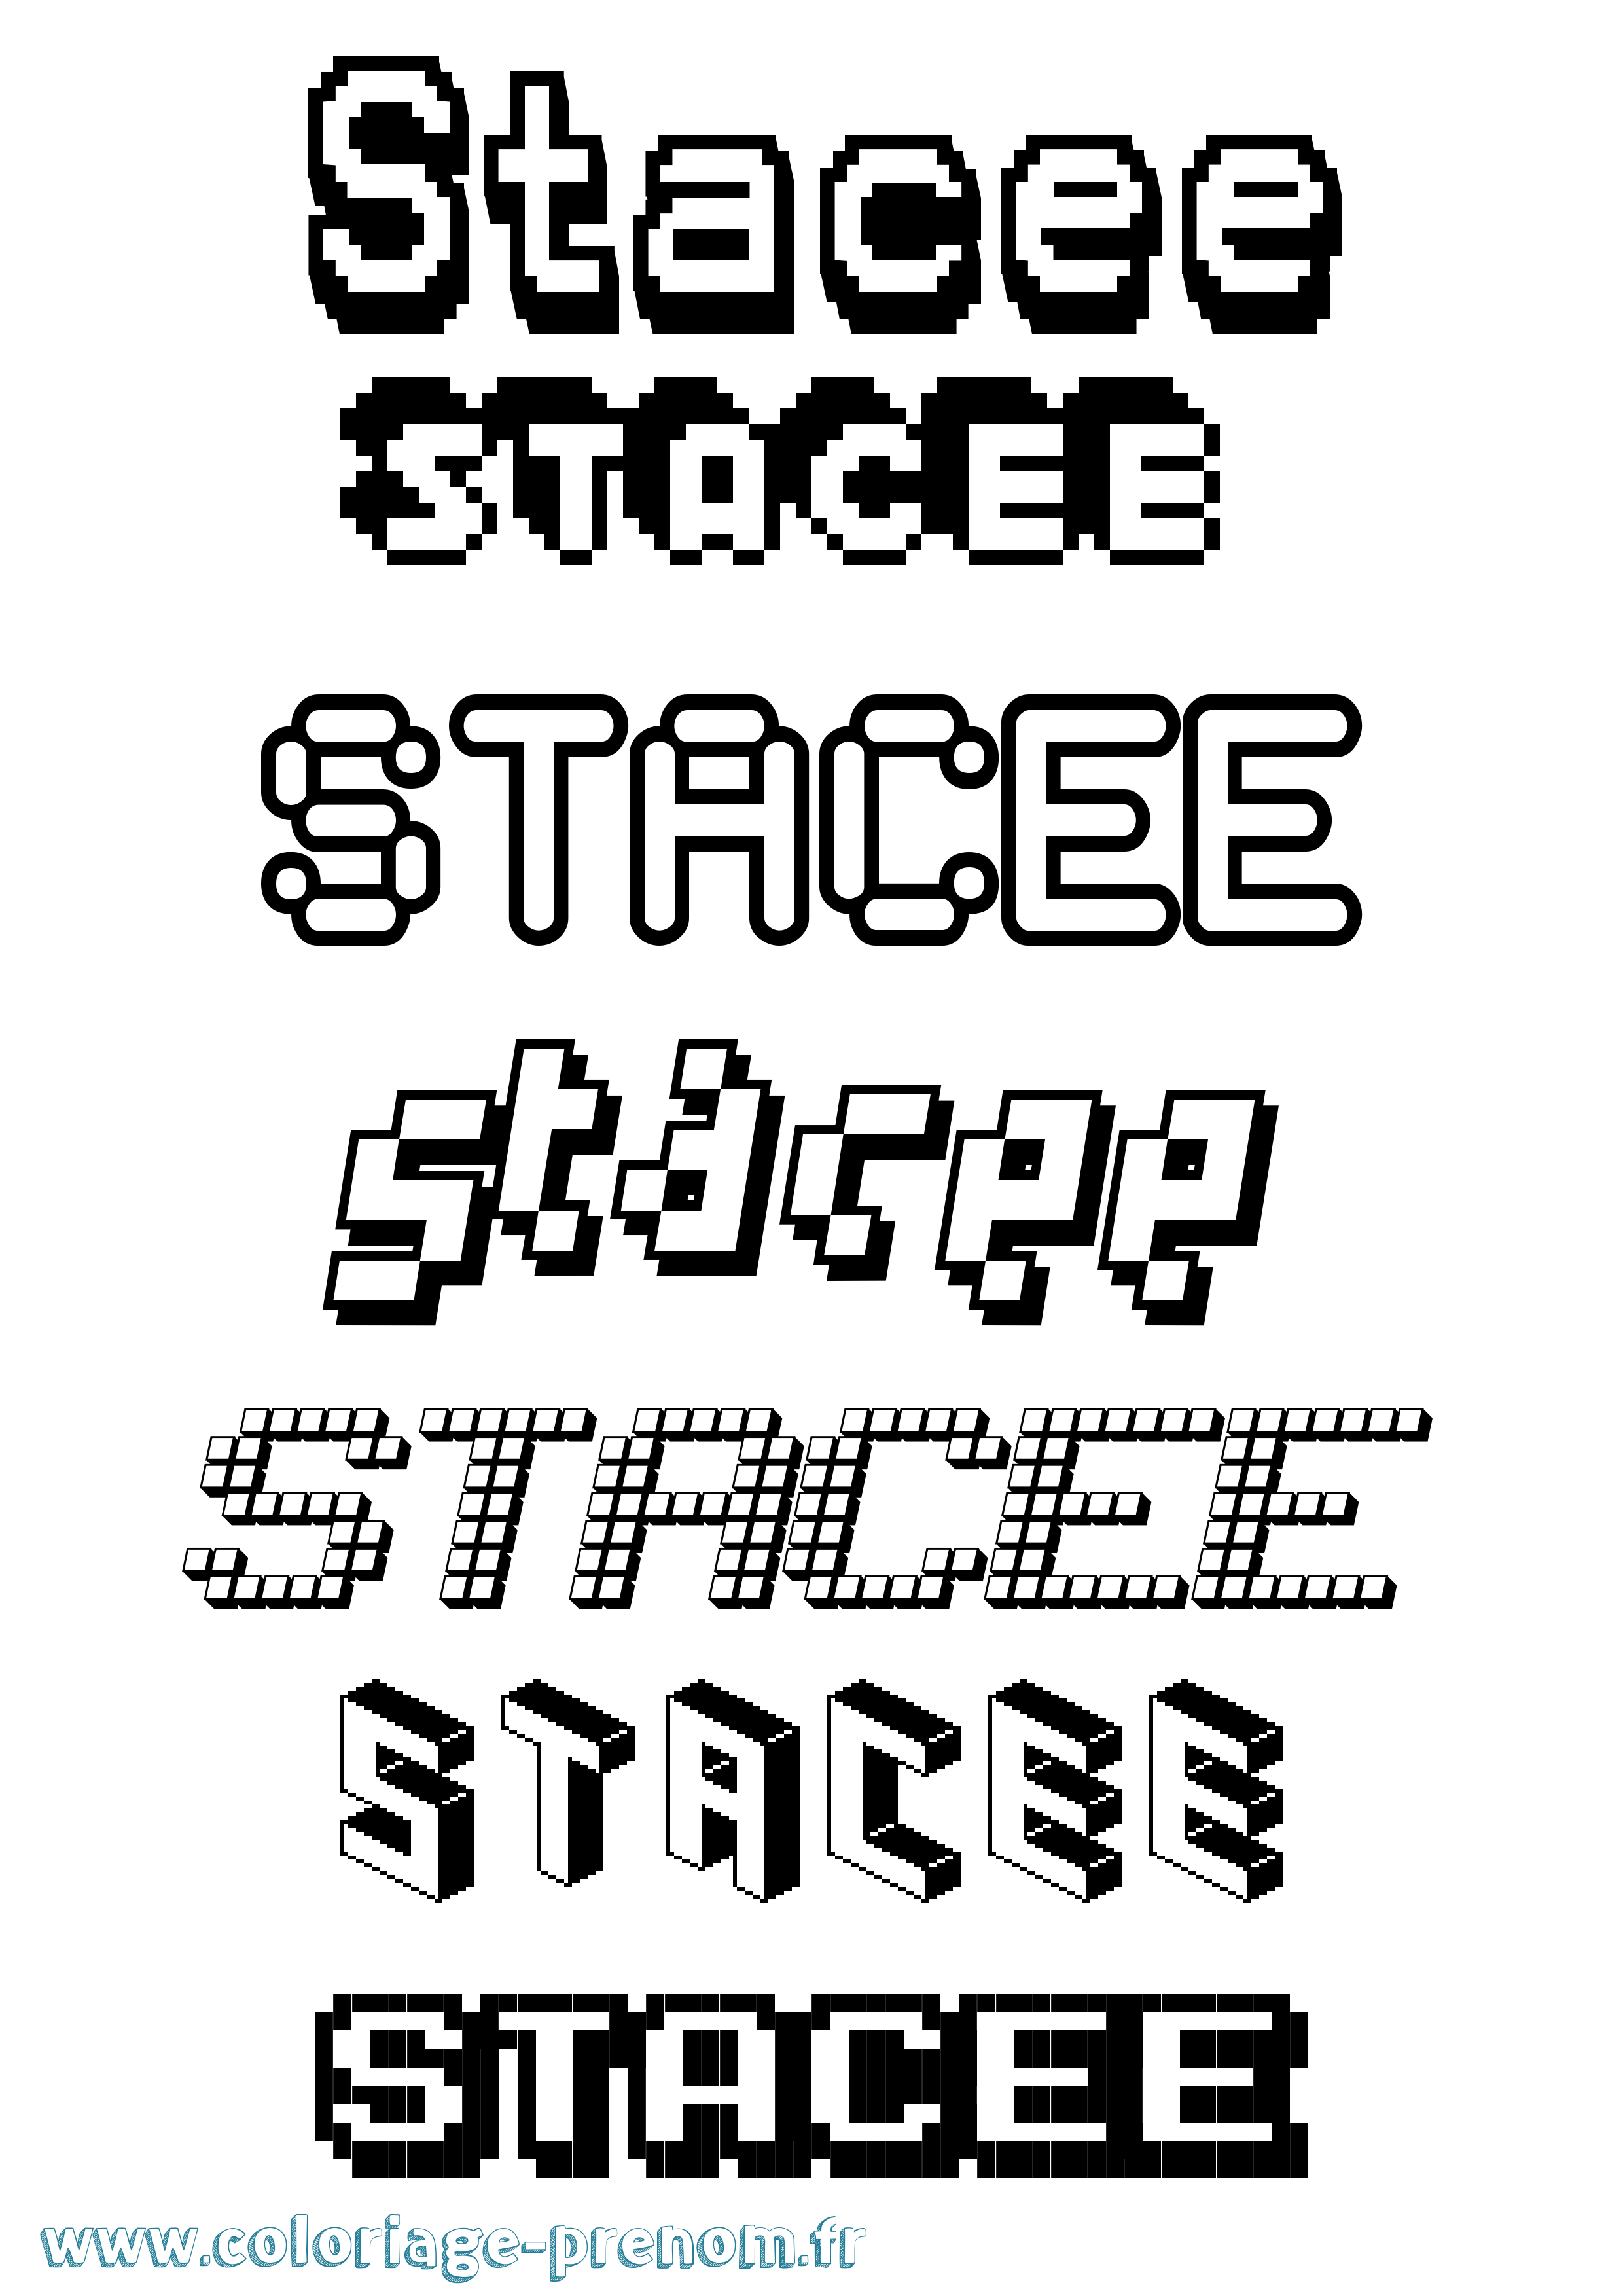 Coloriage prénom Stacee Pixel